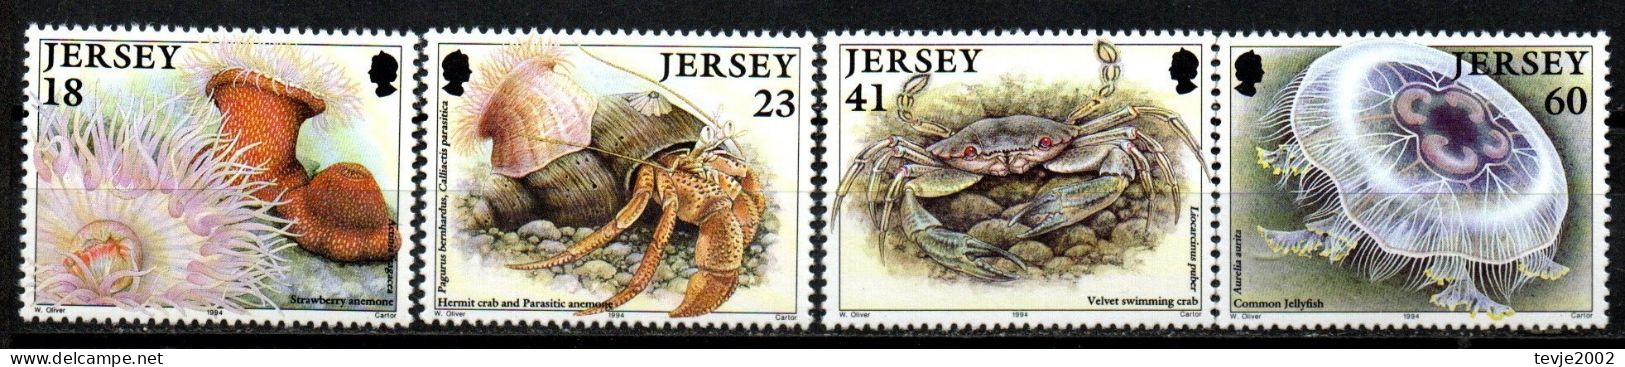 Jersey 1994 - Mi.Nr. 665 - 668 - Postfrisch MNH - Tiere Animals Krabben Crabs - Schaaldieren